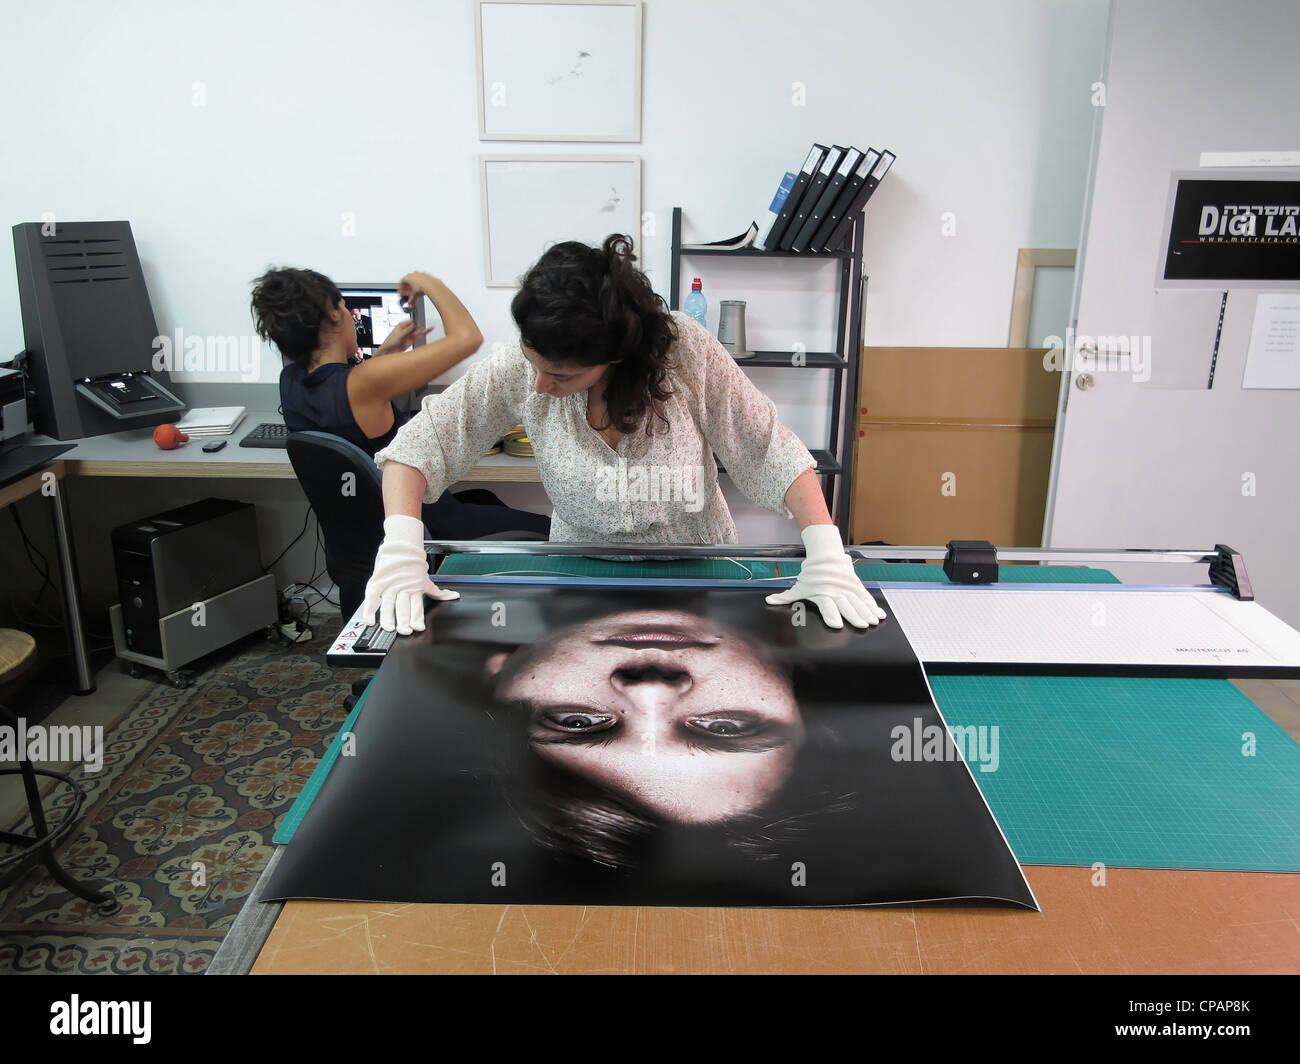 Étudiant en photographie de la manipulation d'un gros caractères sur le laboratoire numérique de l'école pour la photographie ou Naggar Musrara art school dans l'ouest de Jérusalem Israël Banque D'Images